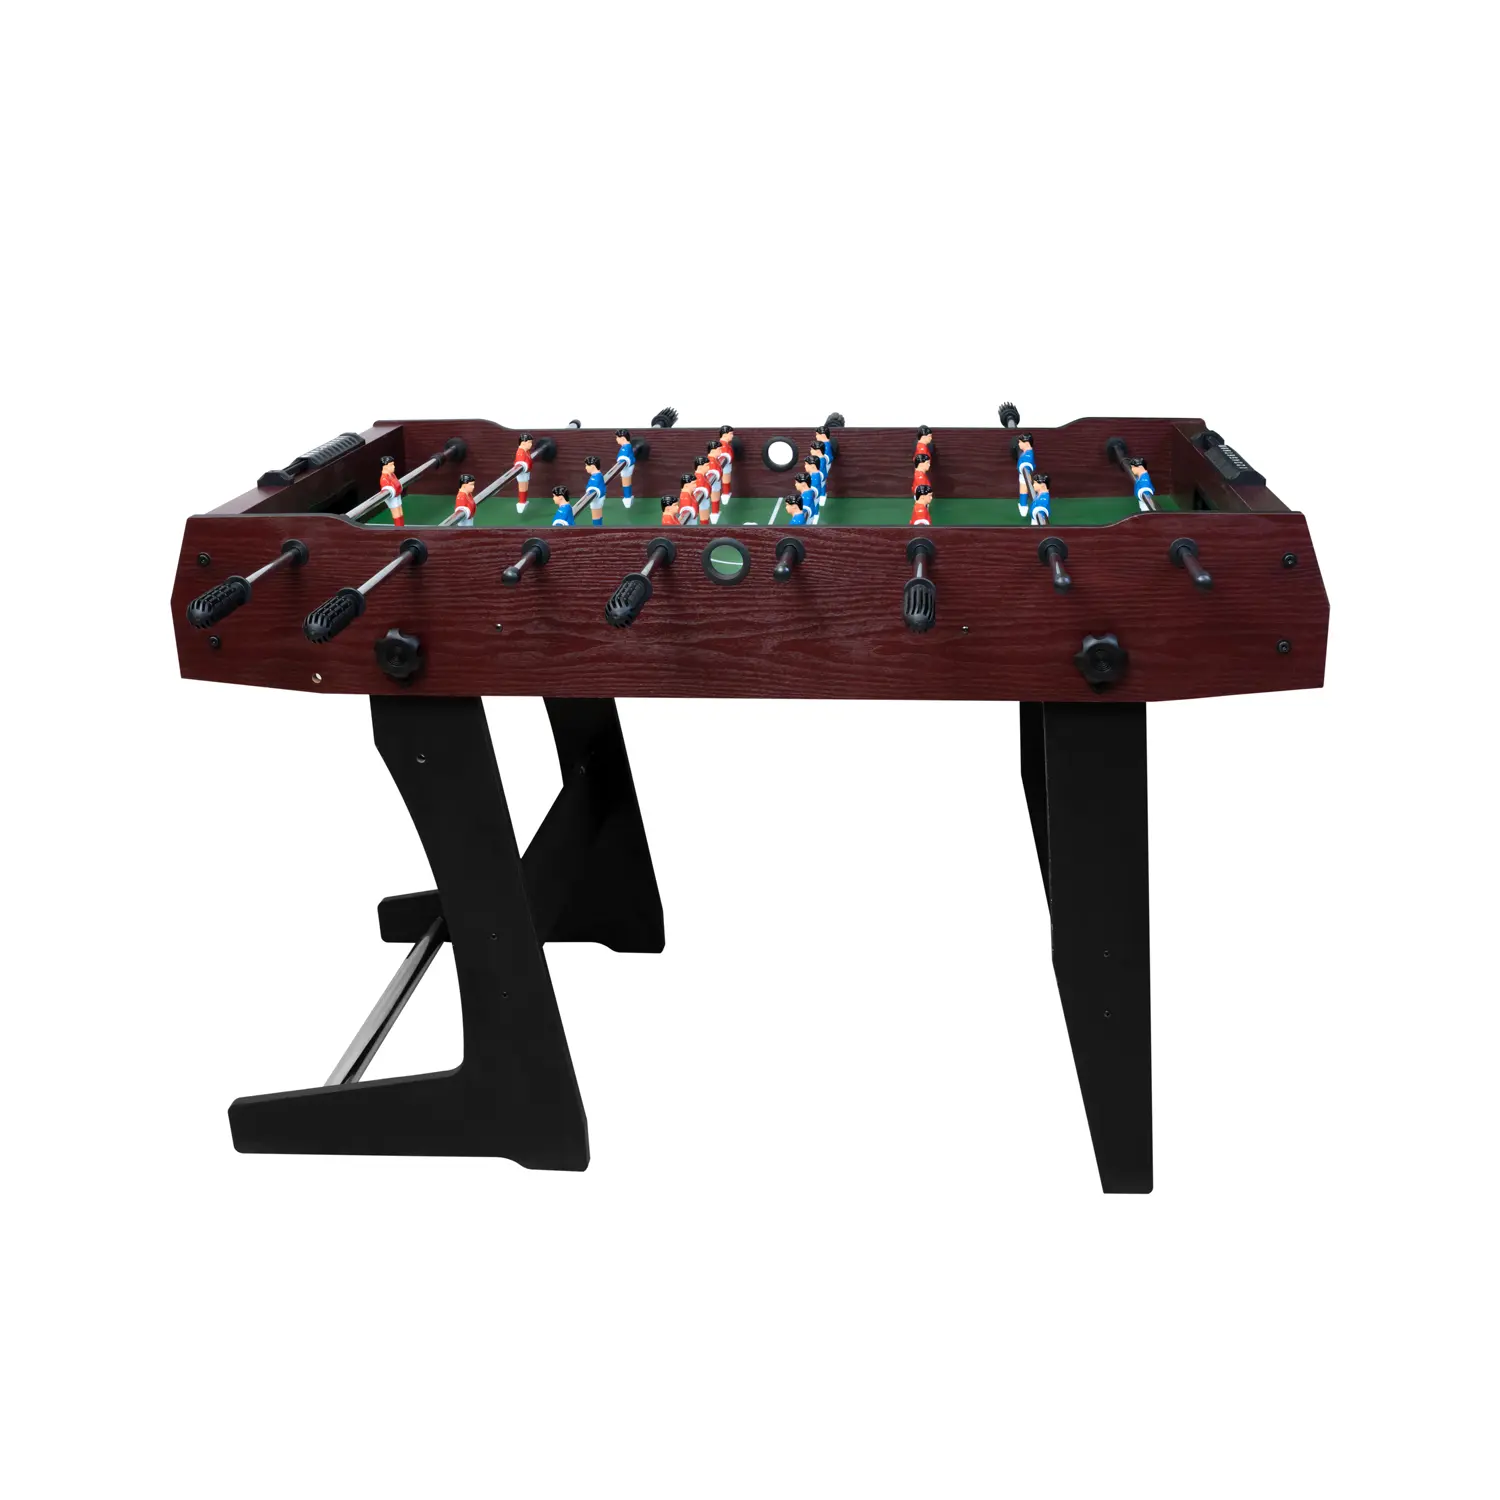 Csocsó asztal, asztali foci, csocsóasztal (8038-WINE-RED)